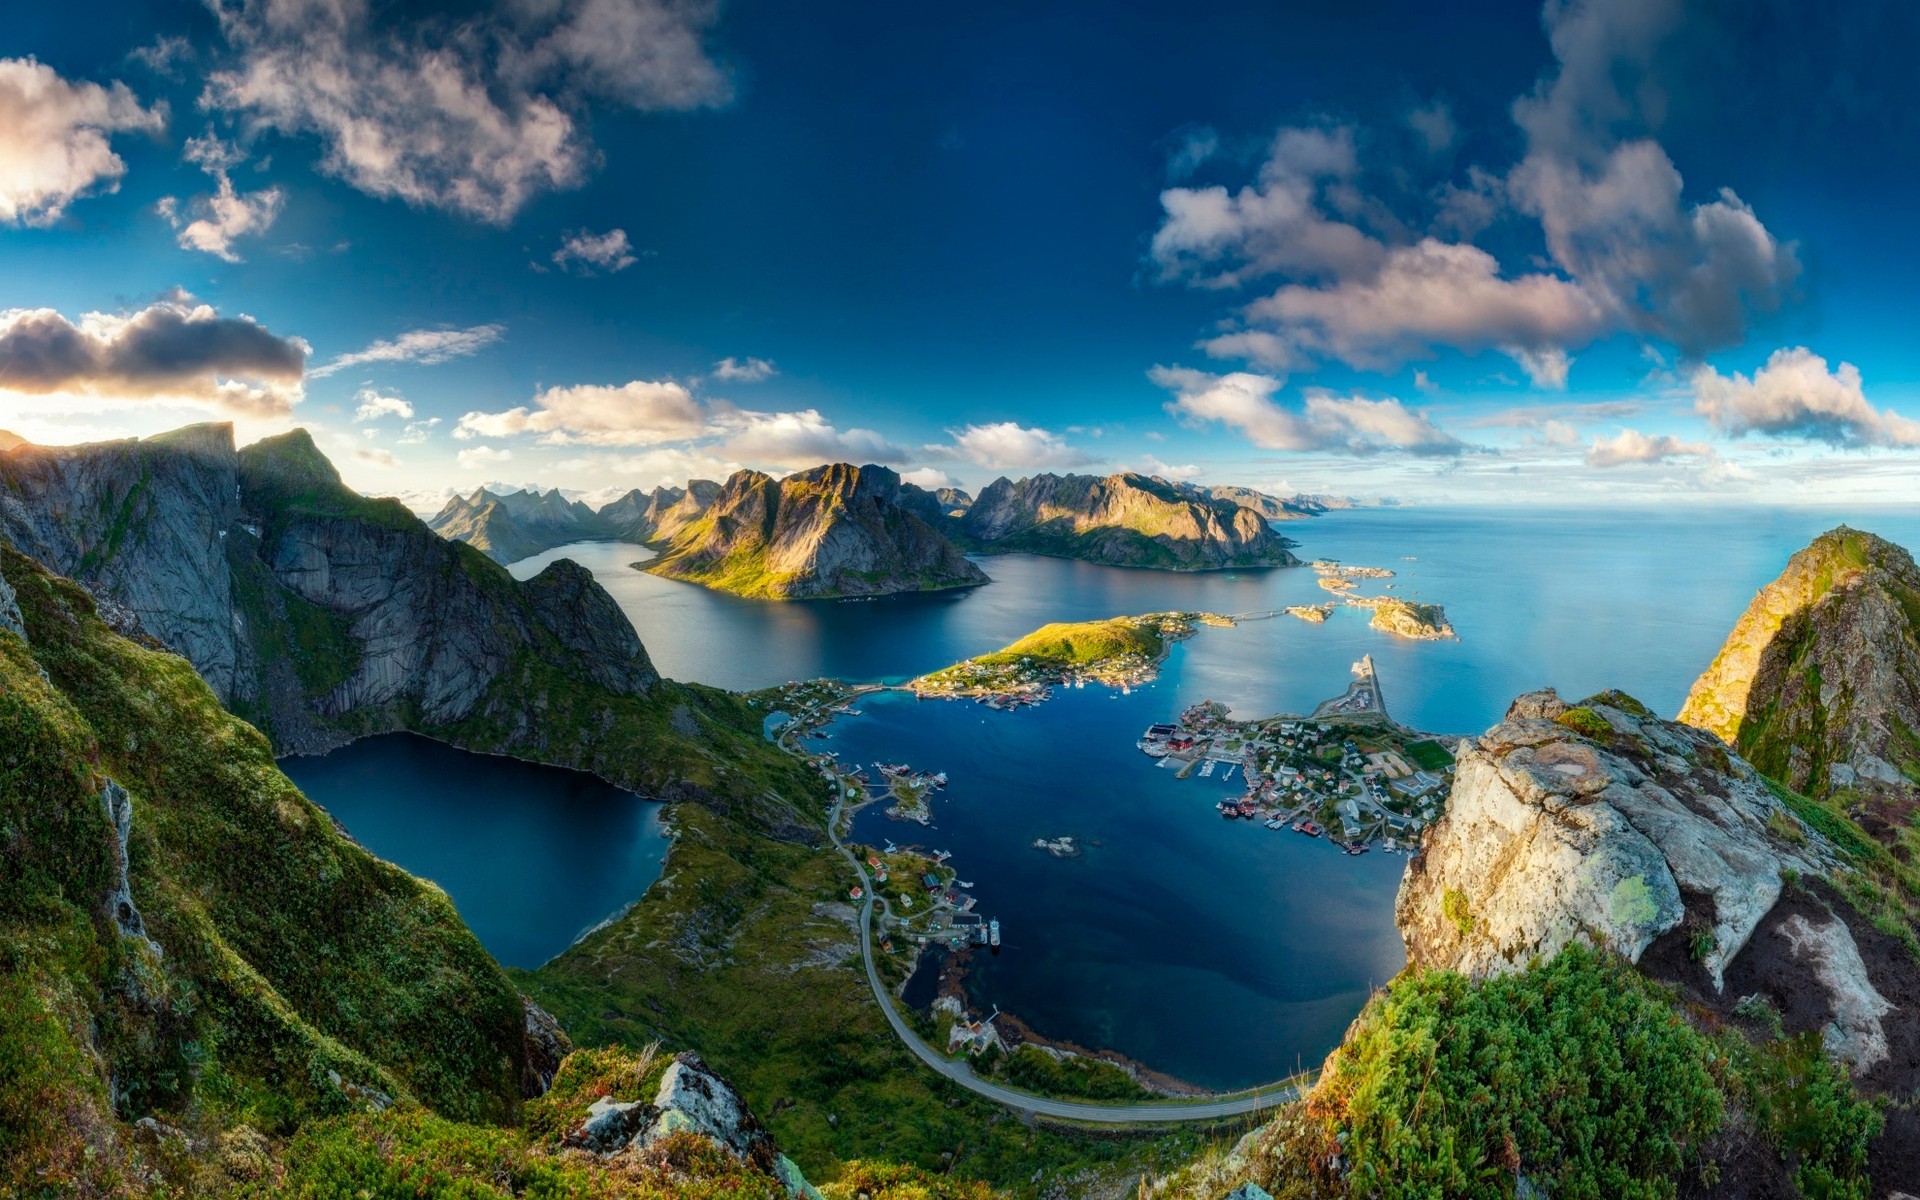 другие города воды пейзаж путешествия горы природа живописный рок небо моря озеро на открытом воздухе зрелище лето reinebringen норвегия